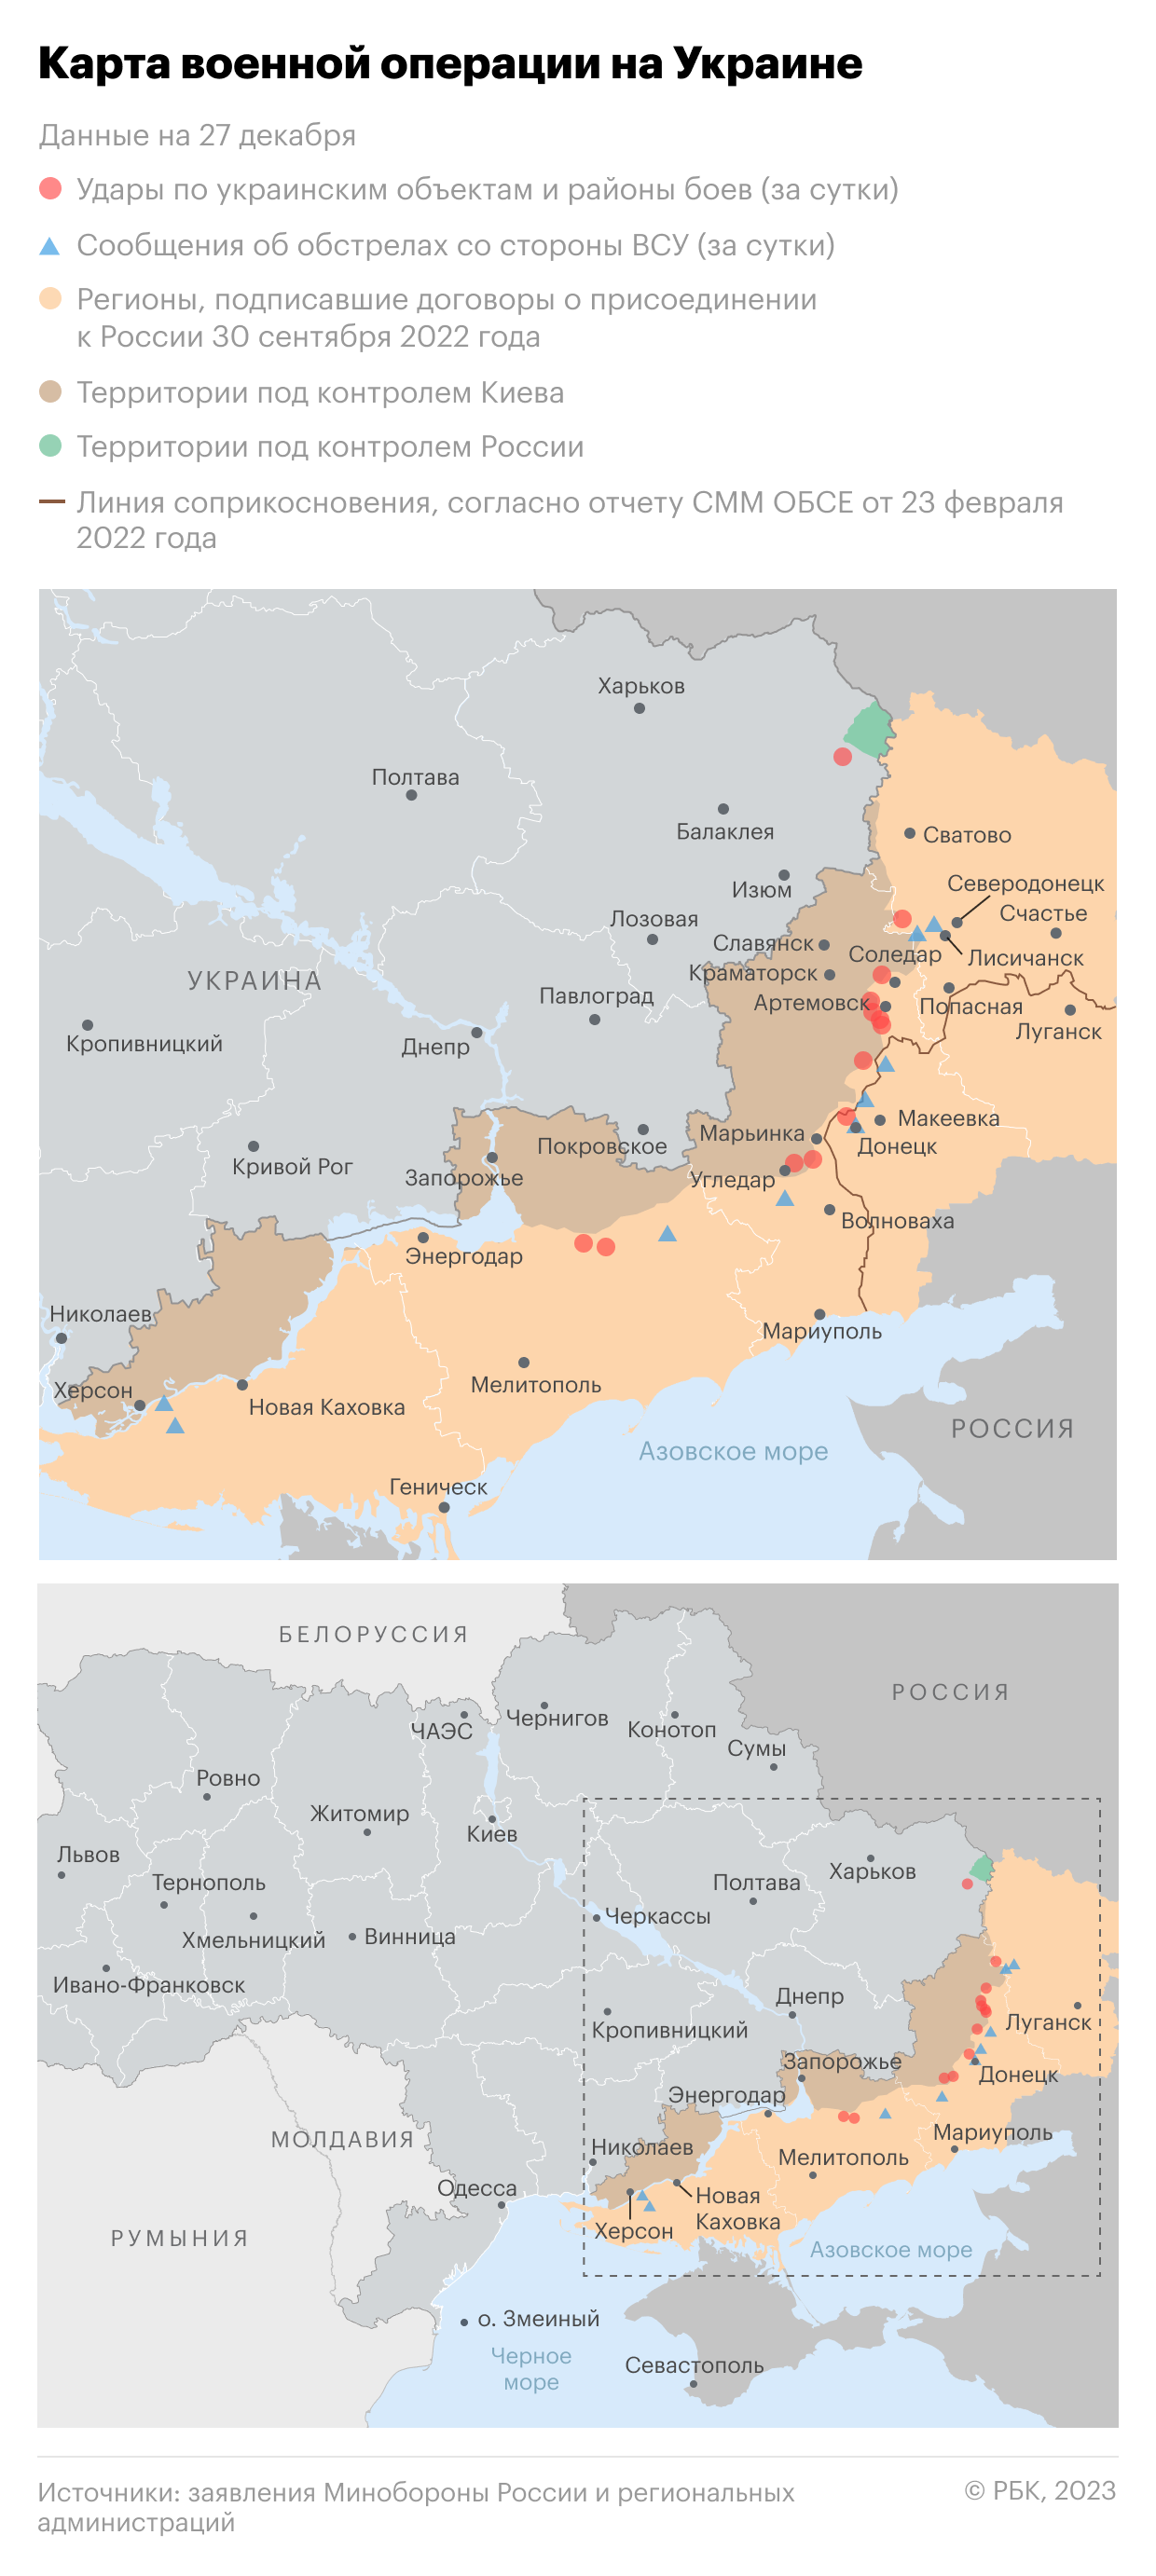 Военная операция на Украине. Карта на 27 декабря